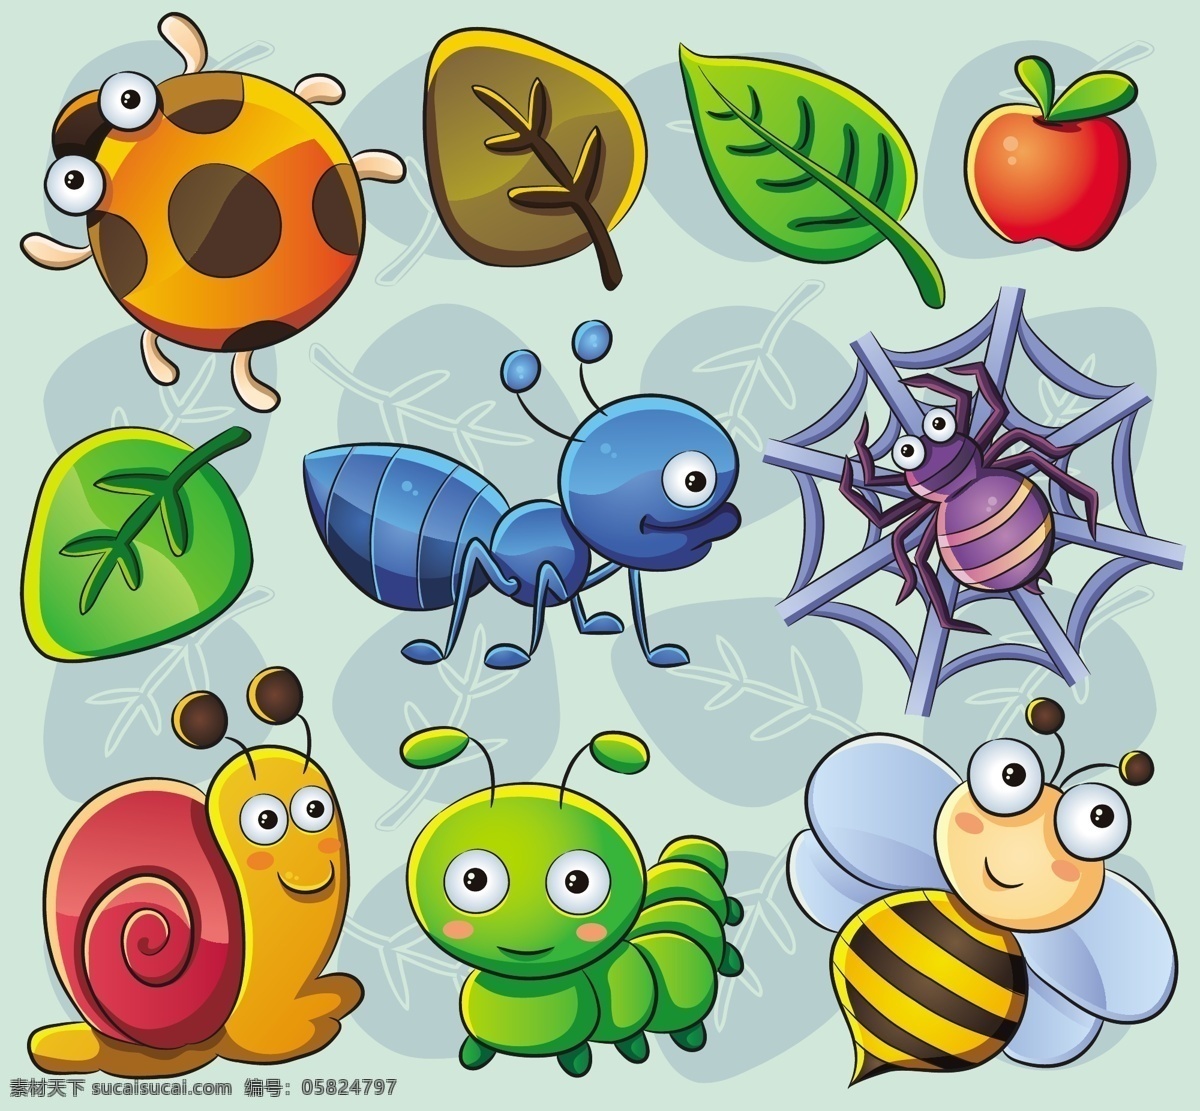 可爱 的卡 通 昆虫 植物 矢量 可爱的 可爱的卡通 矢量动物 psd的 矢量图 其他矢量图